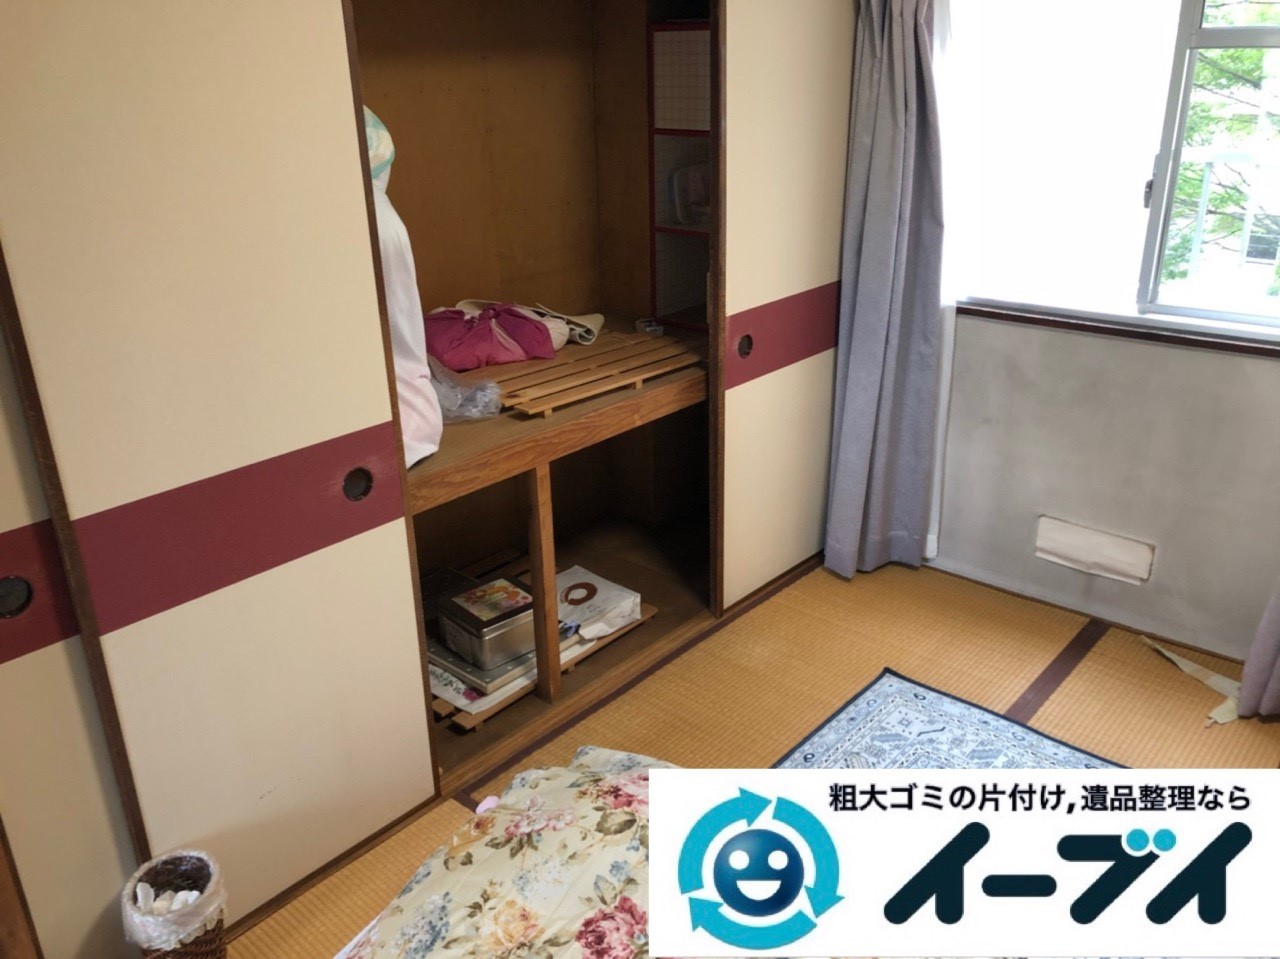 2018年12月19日大阪府大阪市城東区で転居に伴い洗濯機や生活用品などの片付け処分。写真5